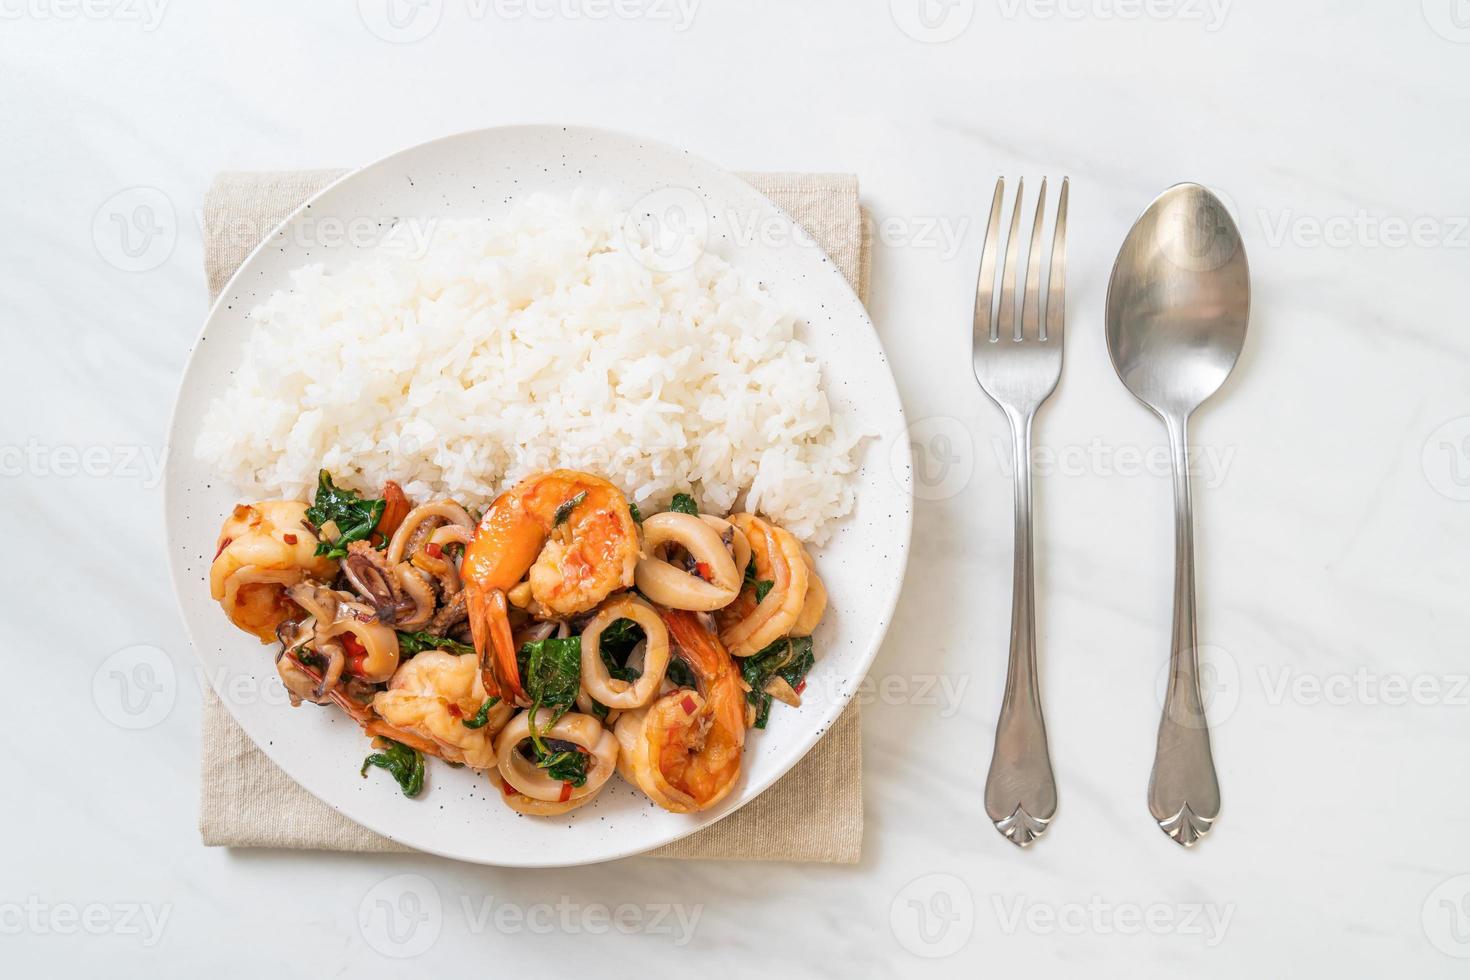 rijst en roergebakken zeevruchten van garnalen en inktvis met thaise basilicum - Aziatisch eten foto